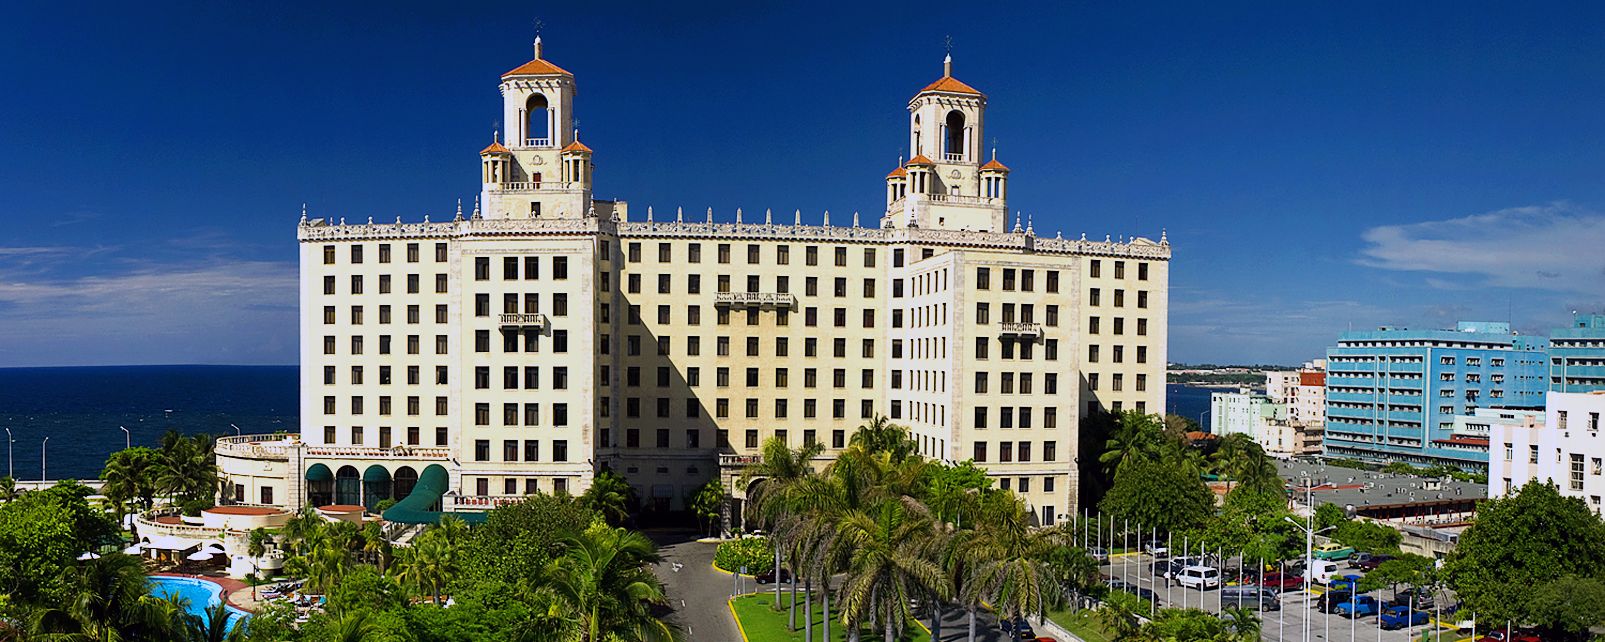 Hôtel Nacional de Cuba